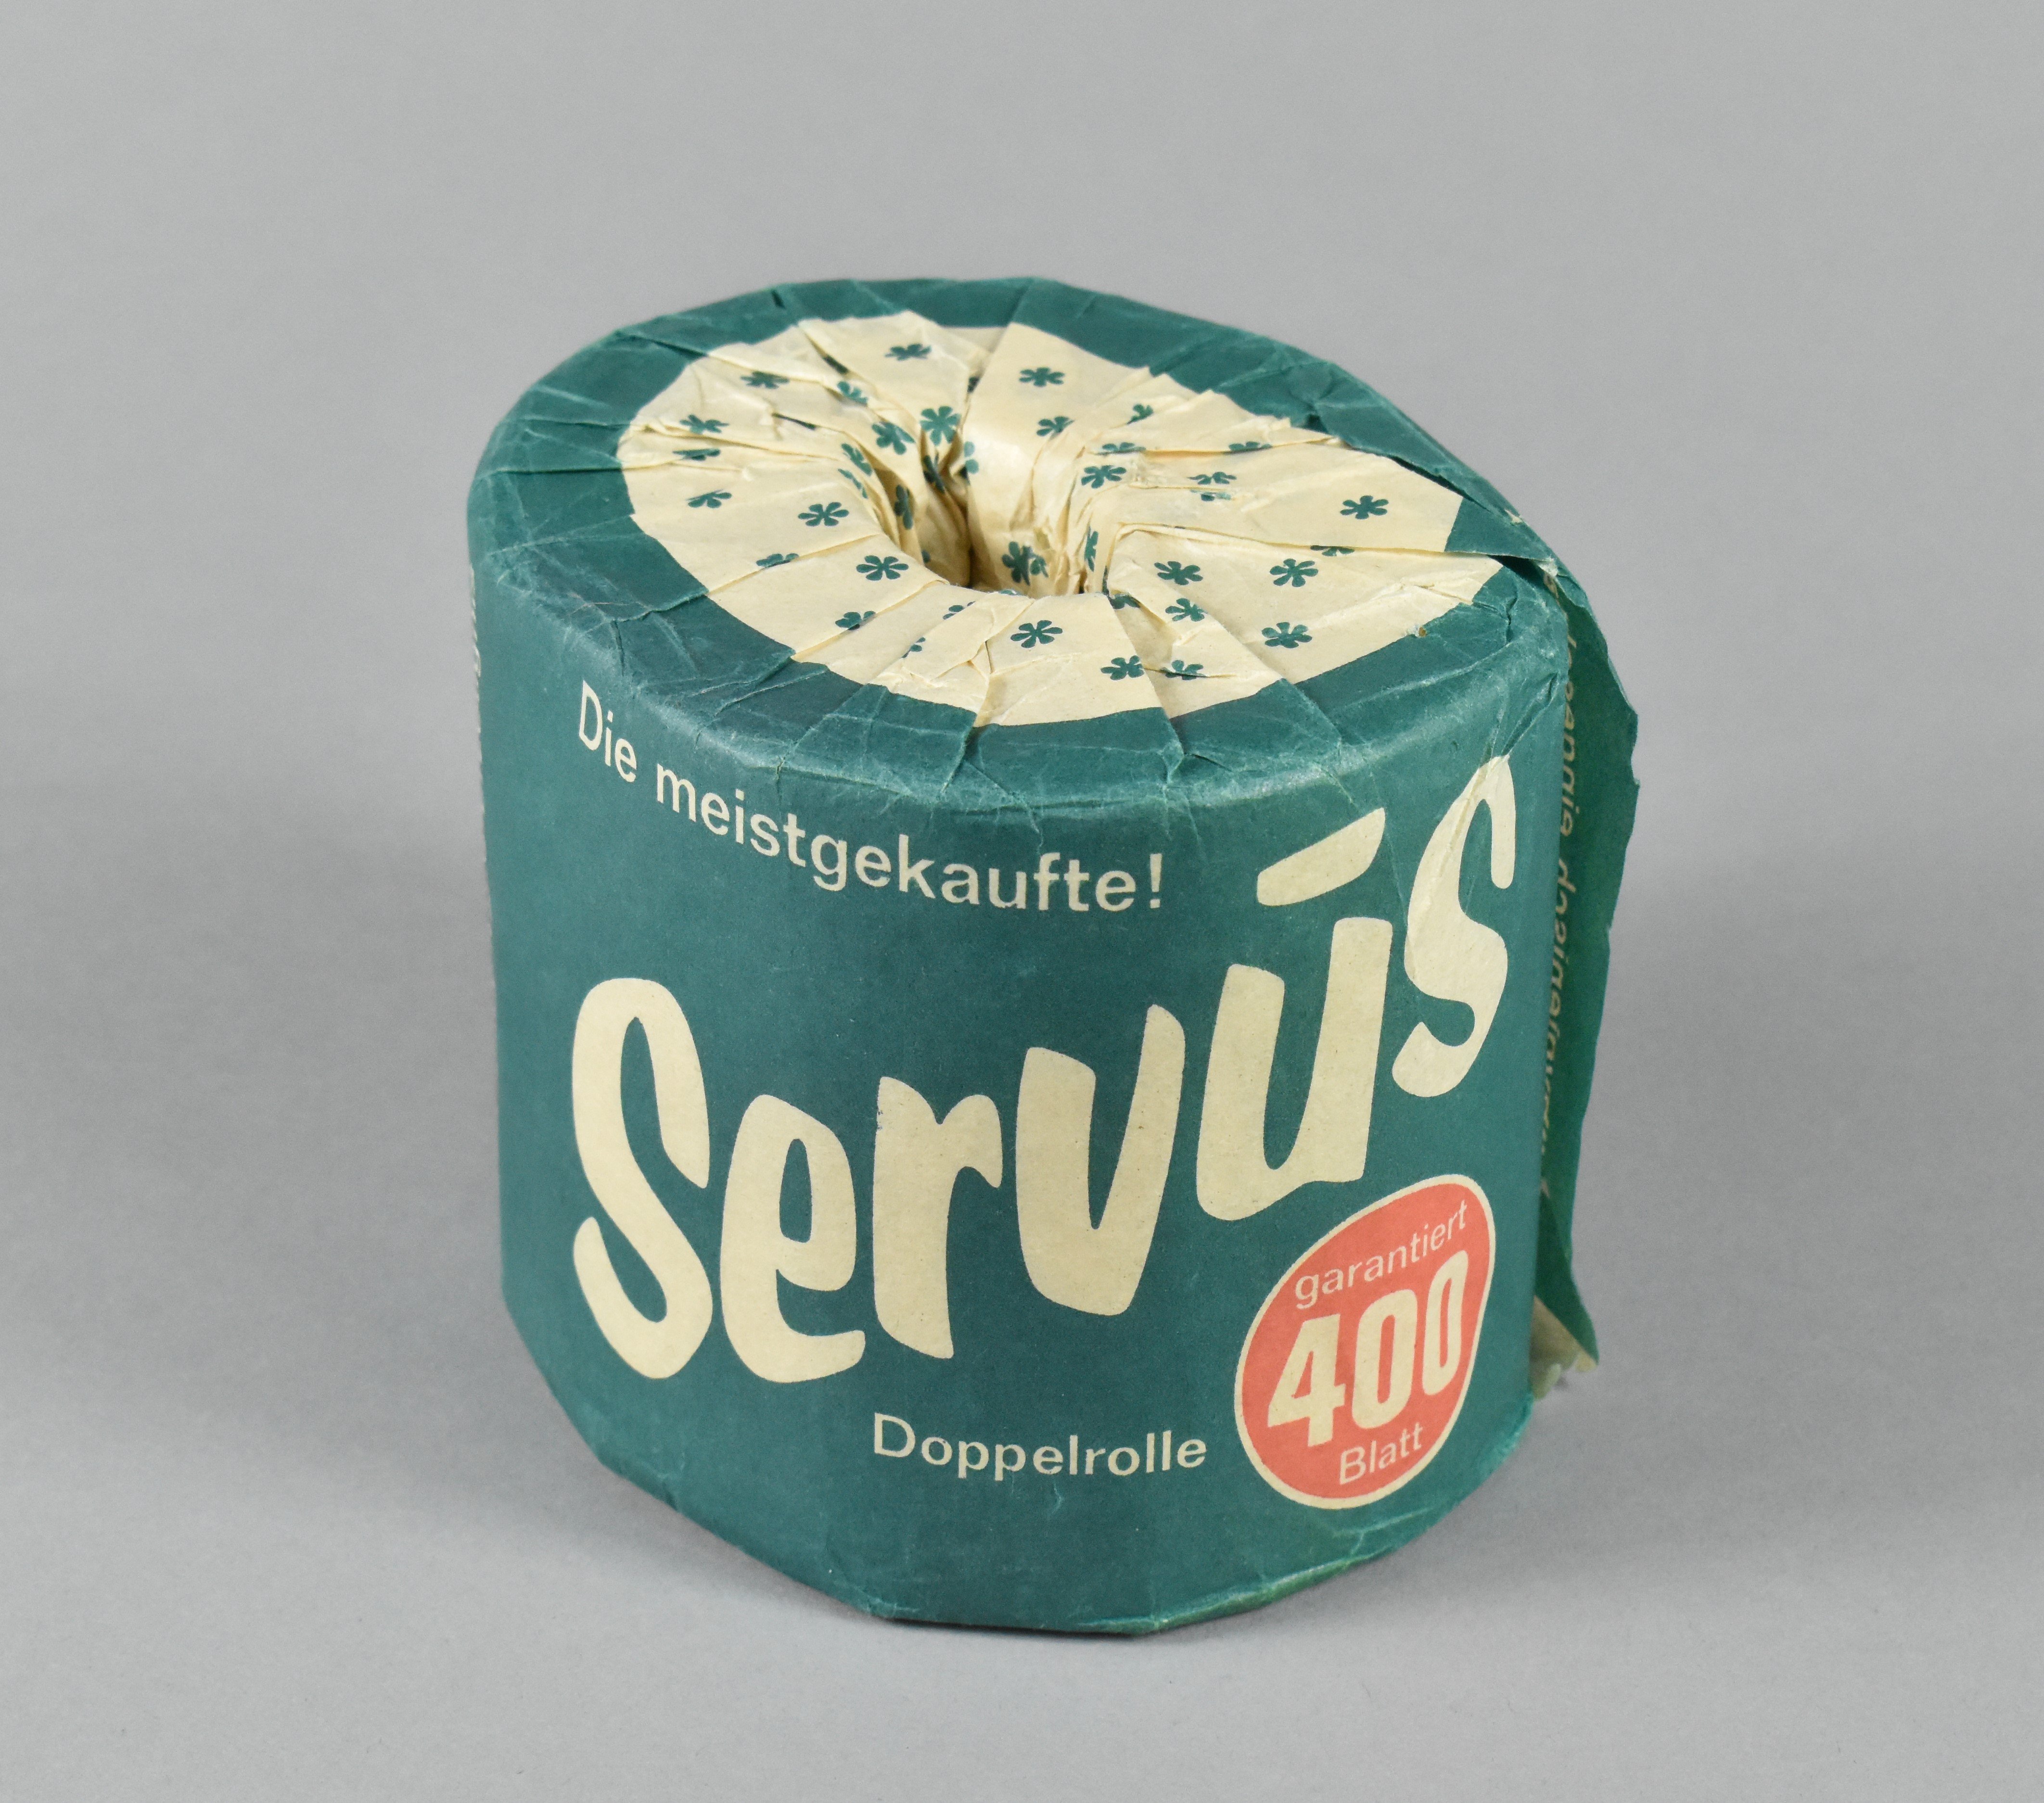 Toilettenpapier "Servus" der Firma Hakle (Heimatwelten Zwönitz CC BY-NC-SA)